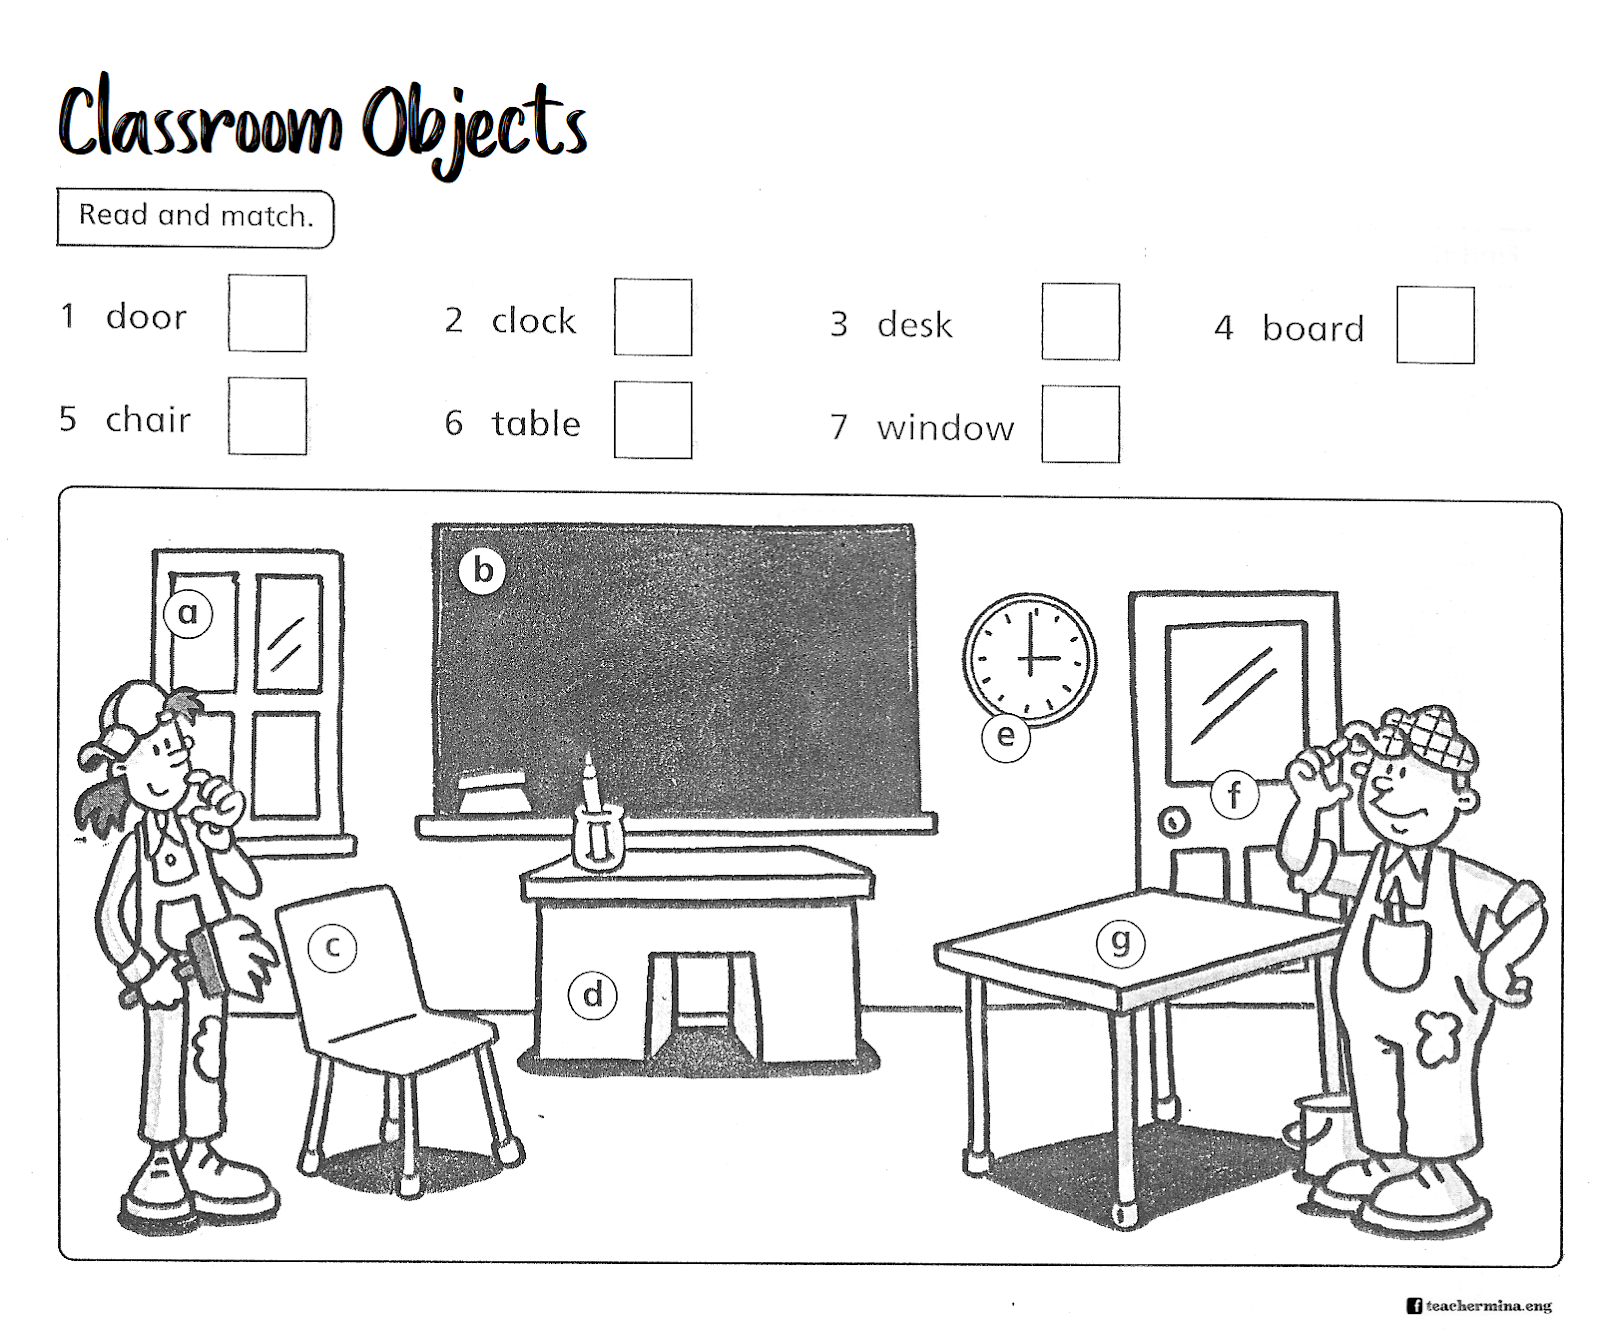 Test my school. Упражнения на тему Classroom objects. Classroom objects упражнения. Задания на английском in the Classroom. Задания английский классная комната.